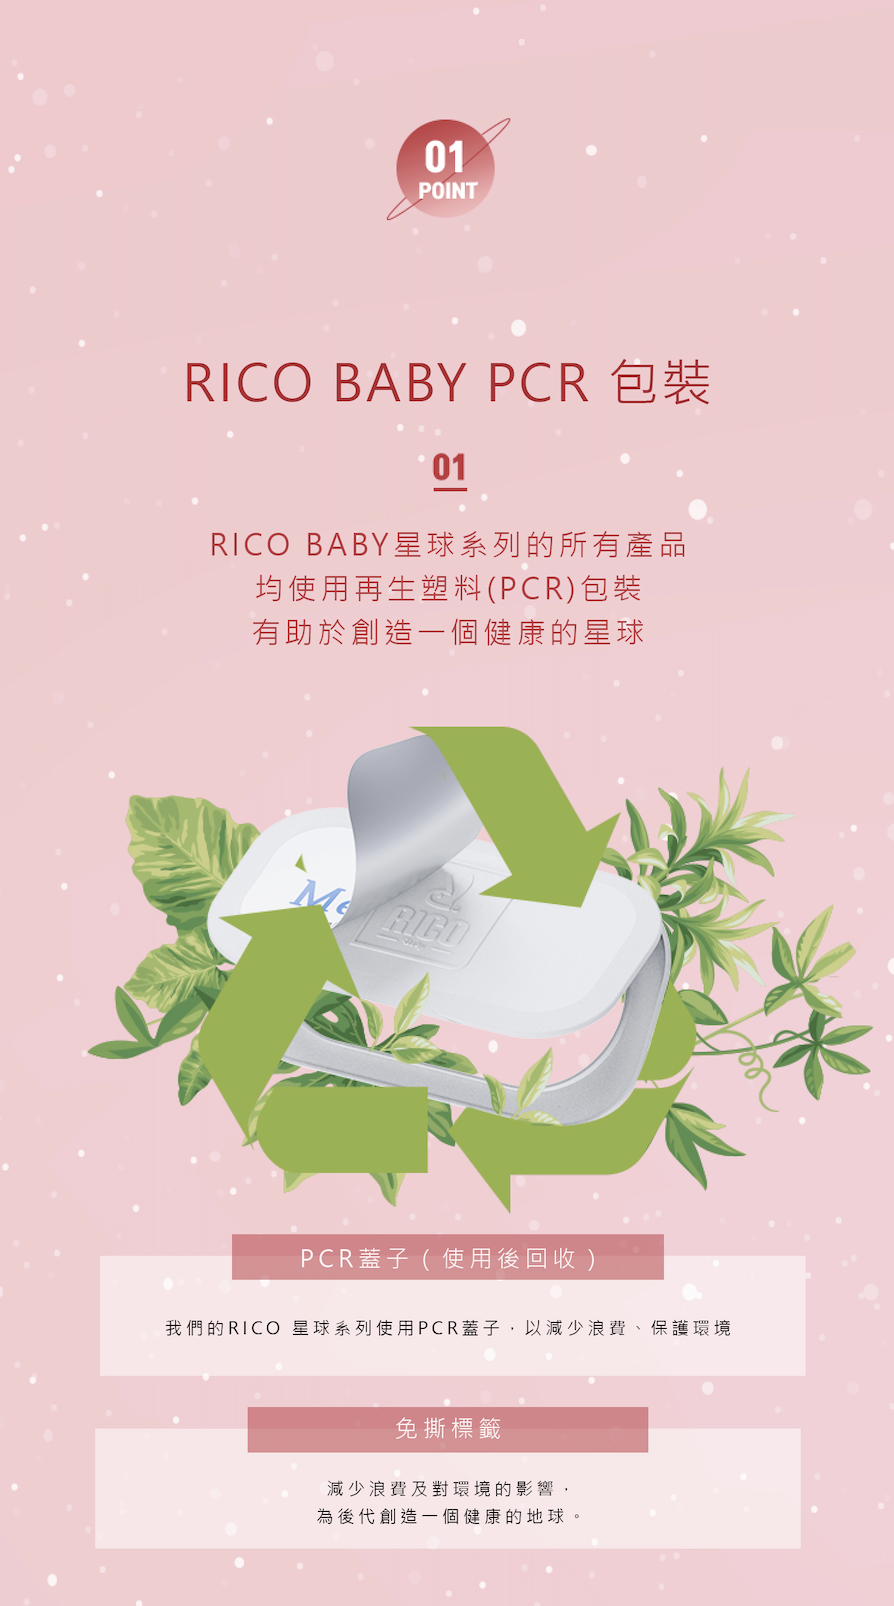 【韓國RICO baby】星球系列 火星金 特厚款10入(70抽/入)